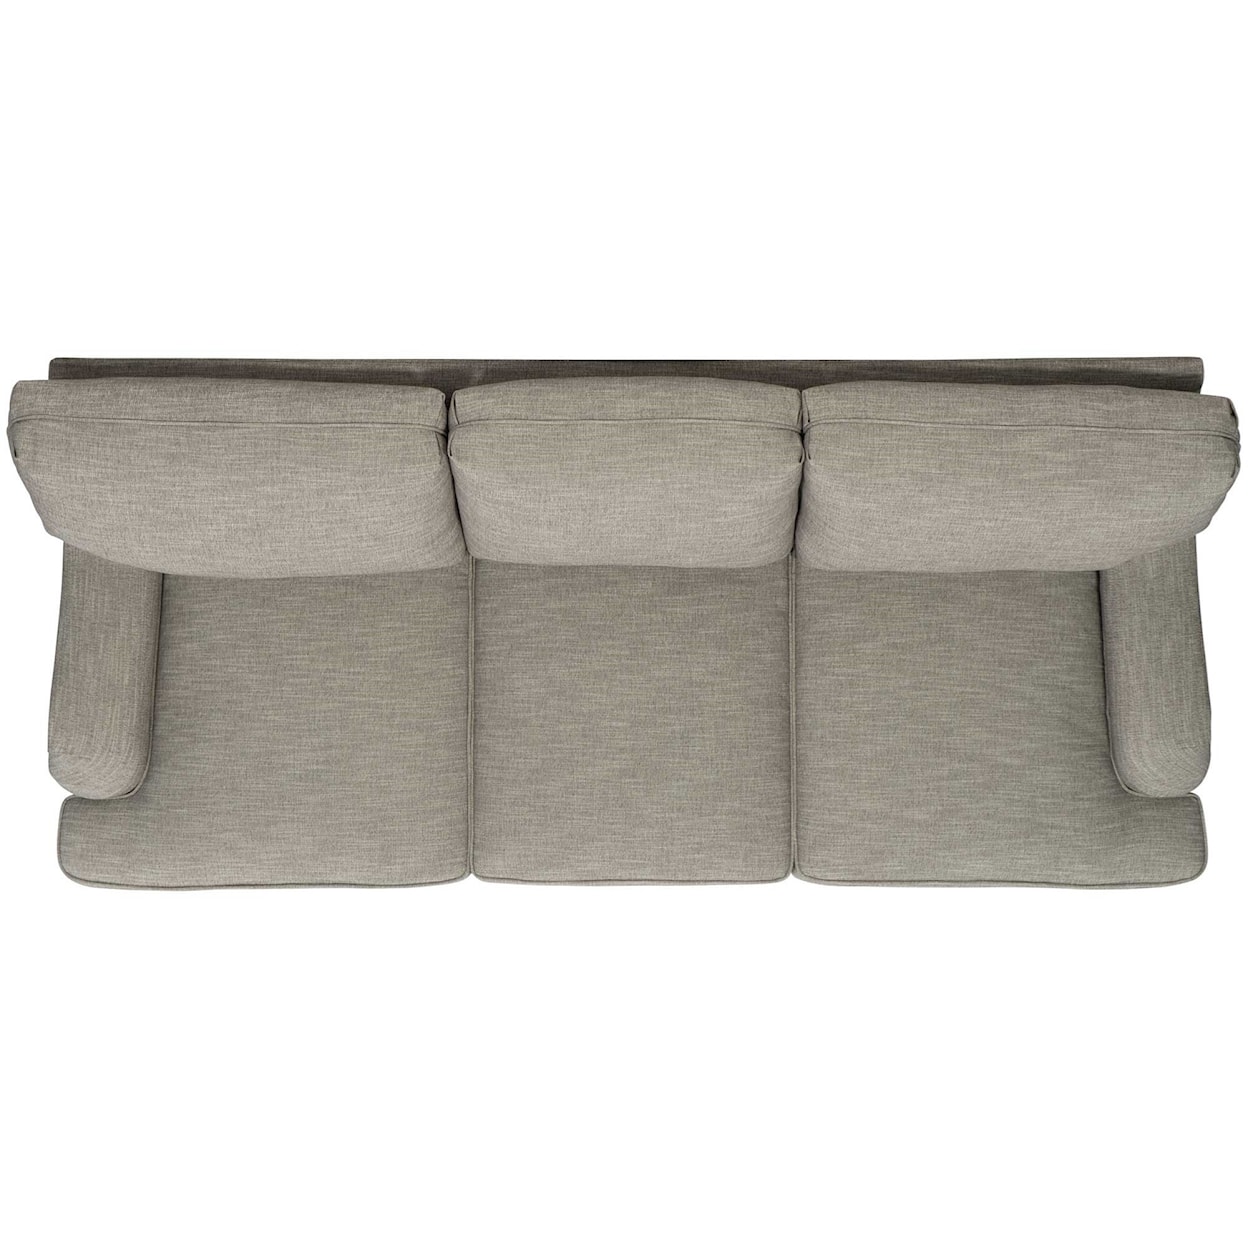 Bernhardt Tarleton Fabric Sofa without Pillows